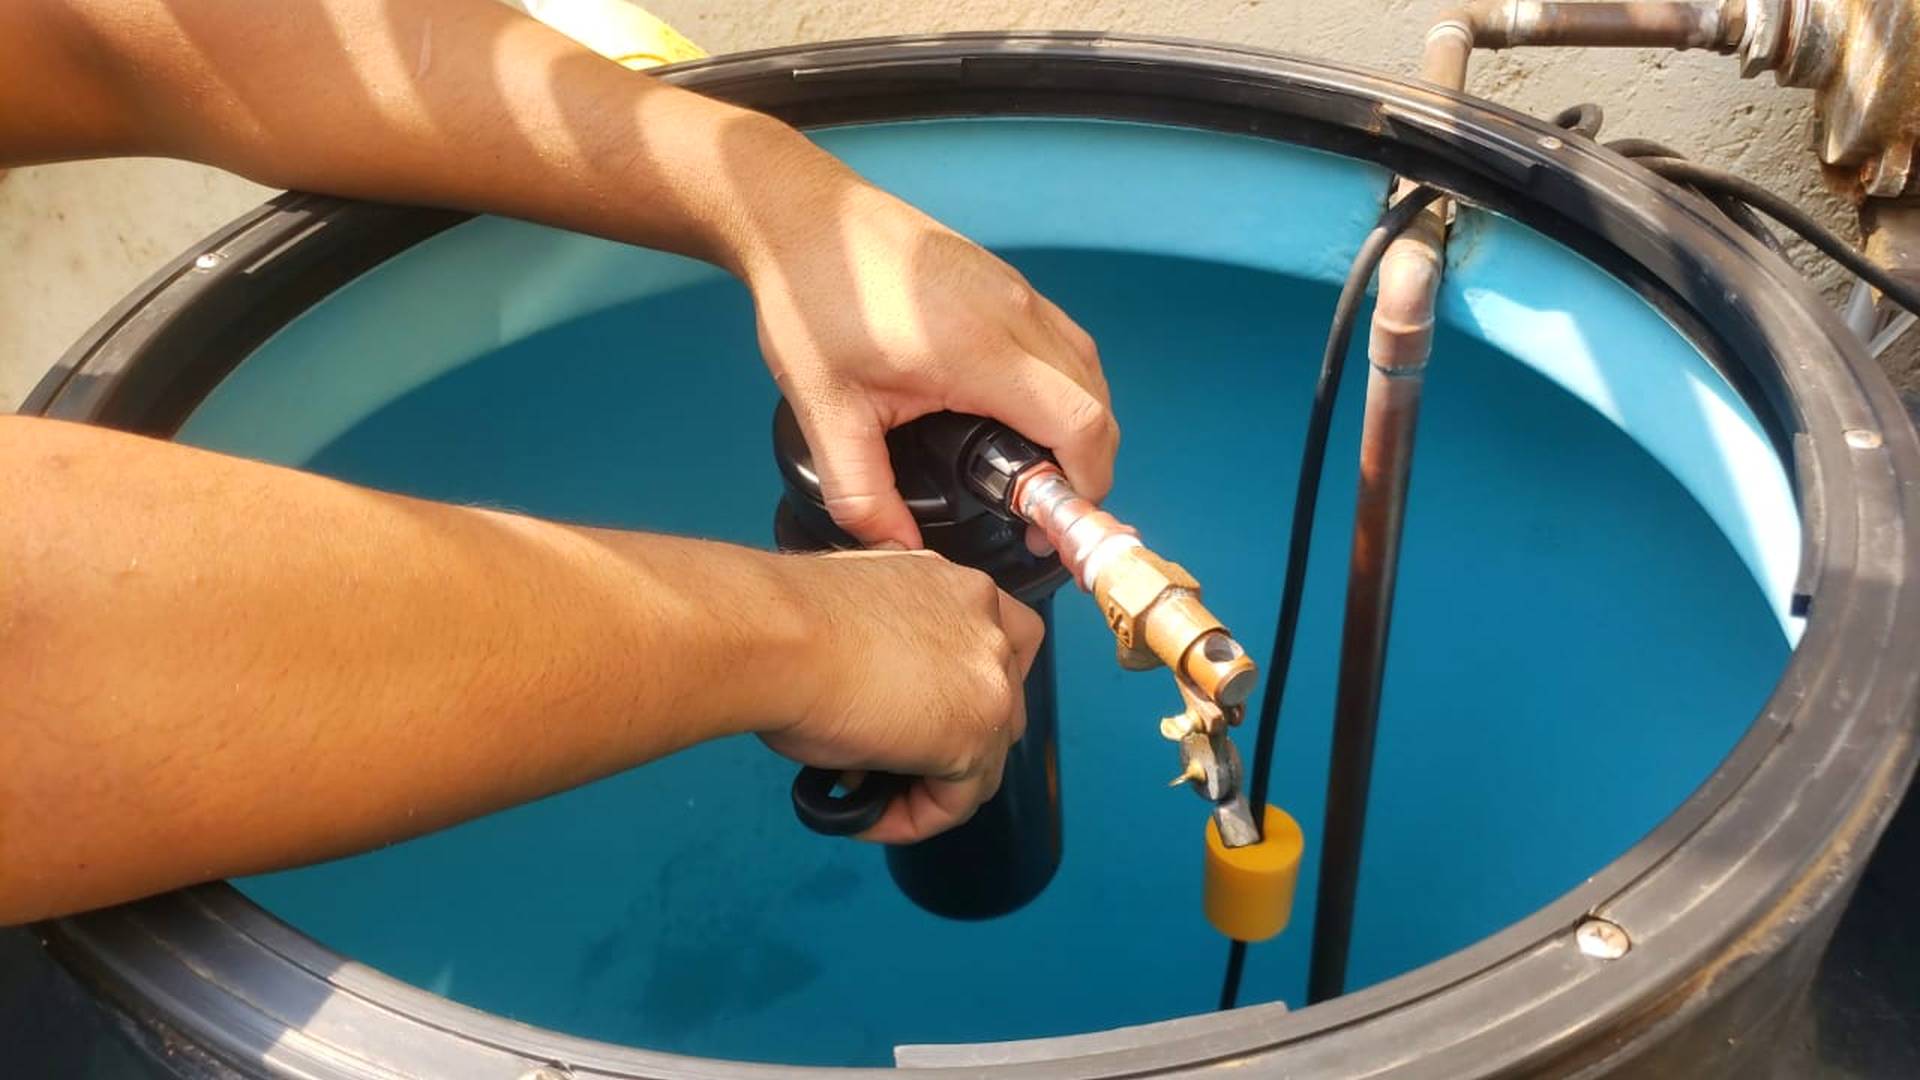 Una persona instalando un filtro en la entrada de agua de un tinaco domestico